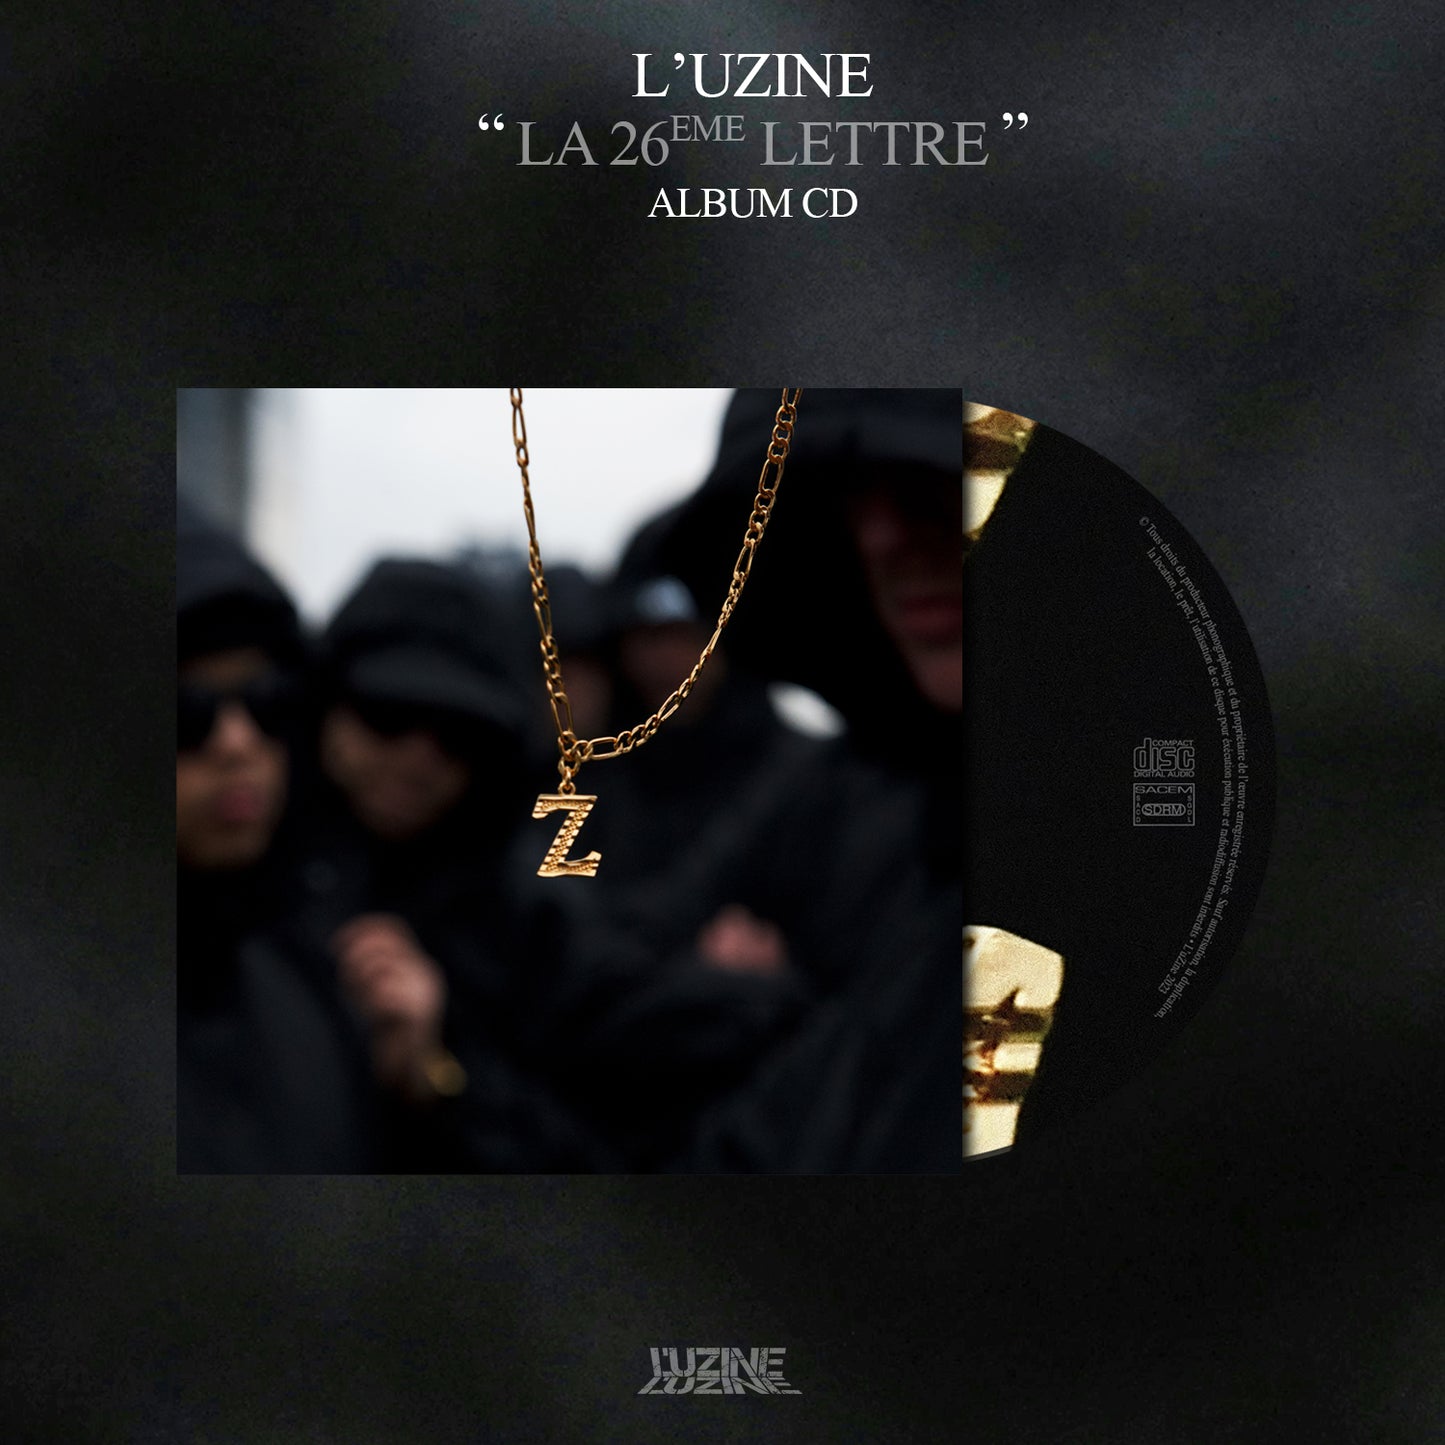 Album CD - L'uZine "La 26ème Lettre"